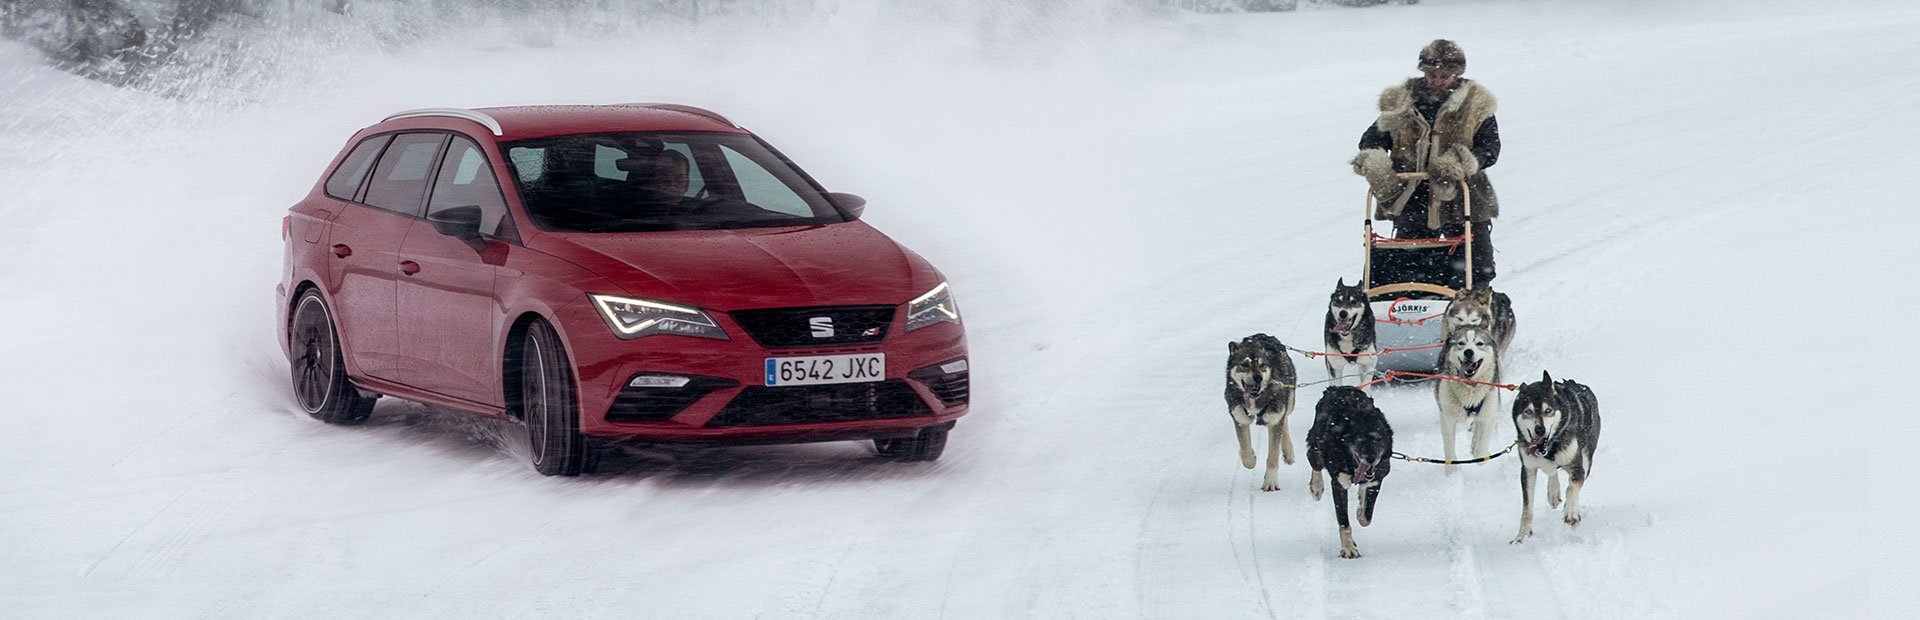 Hiszpański temperament i mroźna Laponia, czyli SEAT Leon CUPRA żegna zimę w sportowym stylu